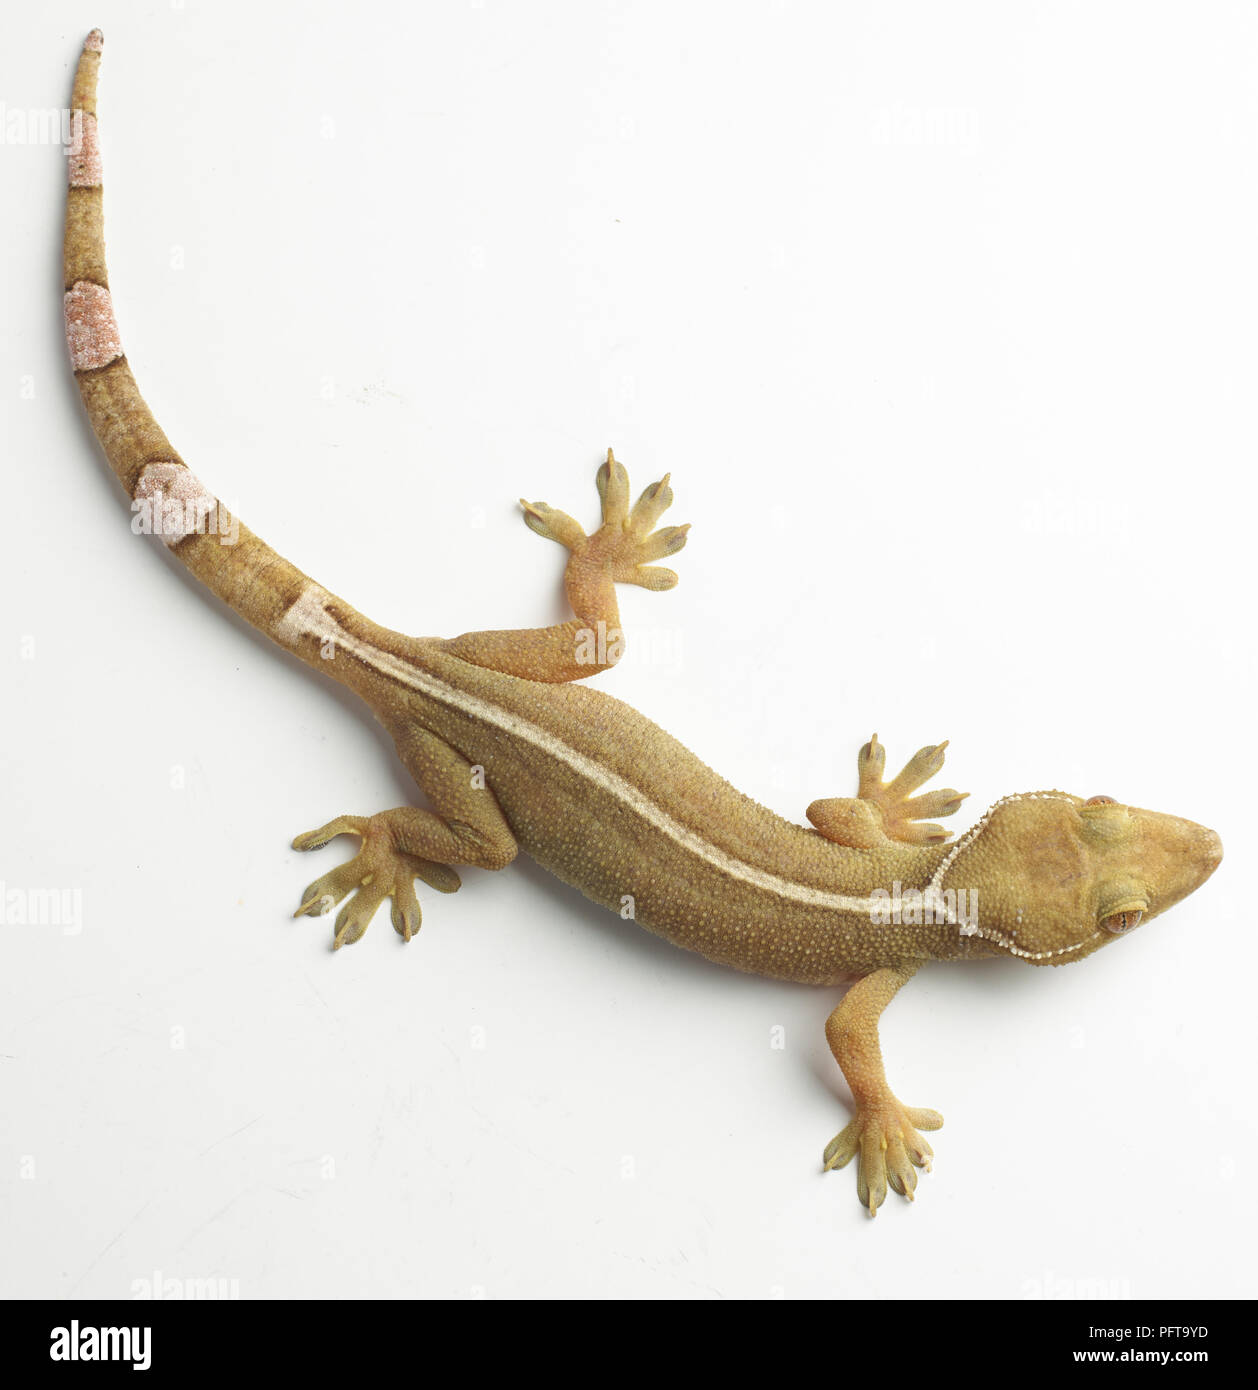 Palm gecko (Gekko gecko). Stock Photo